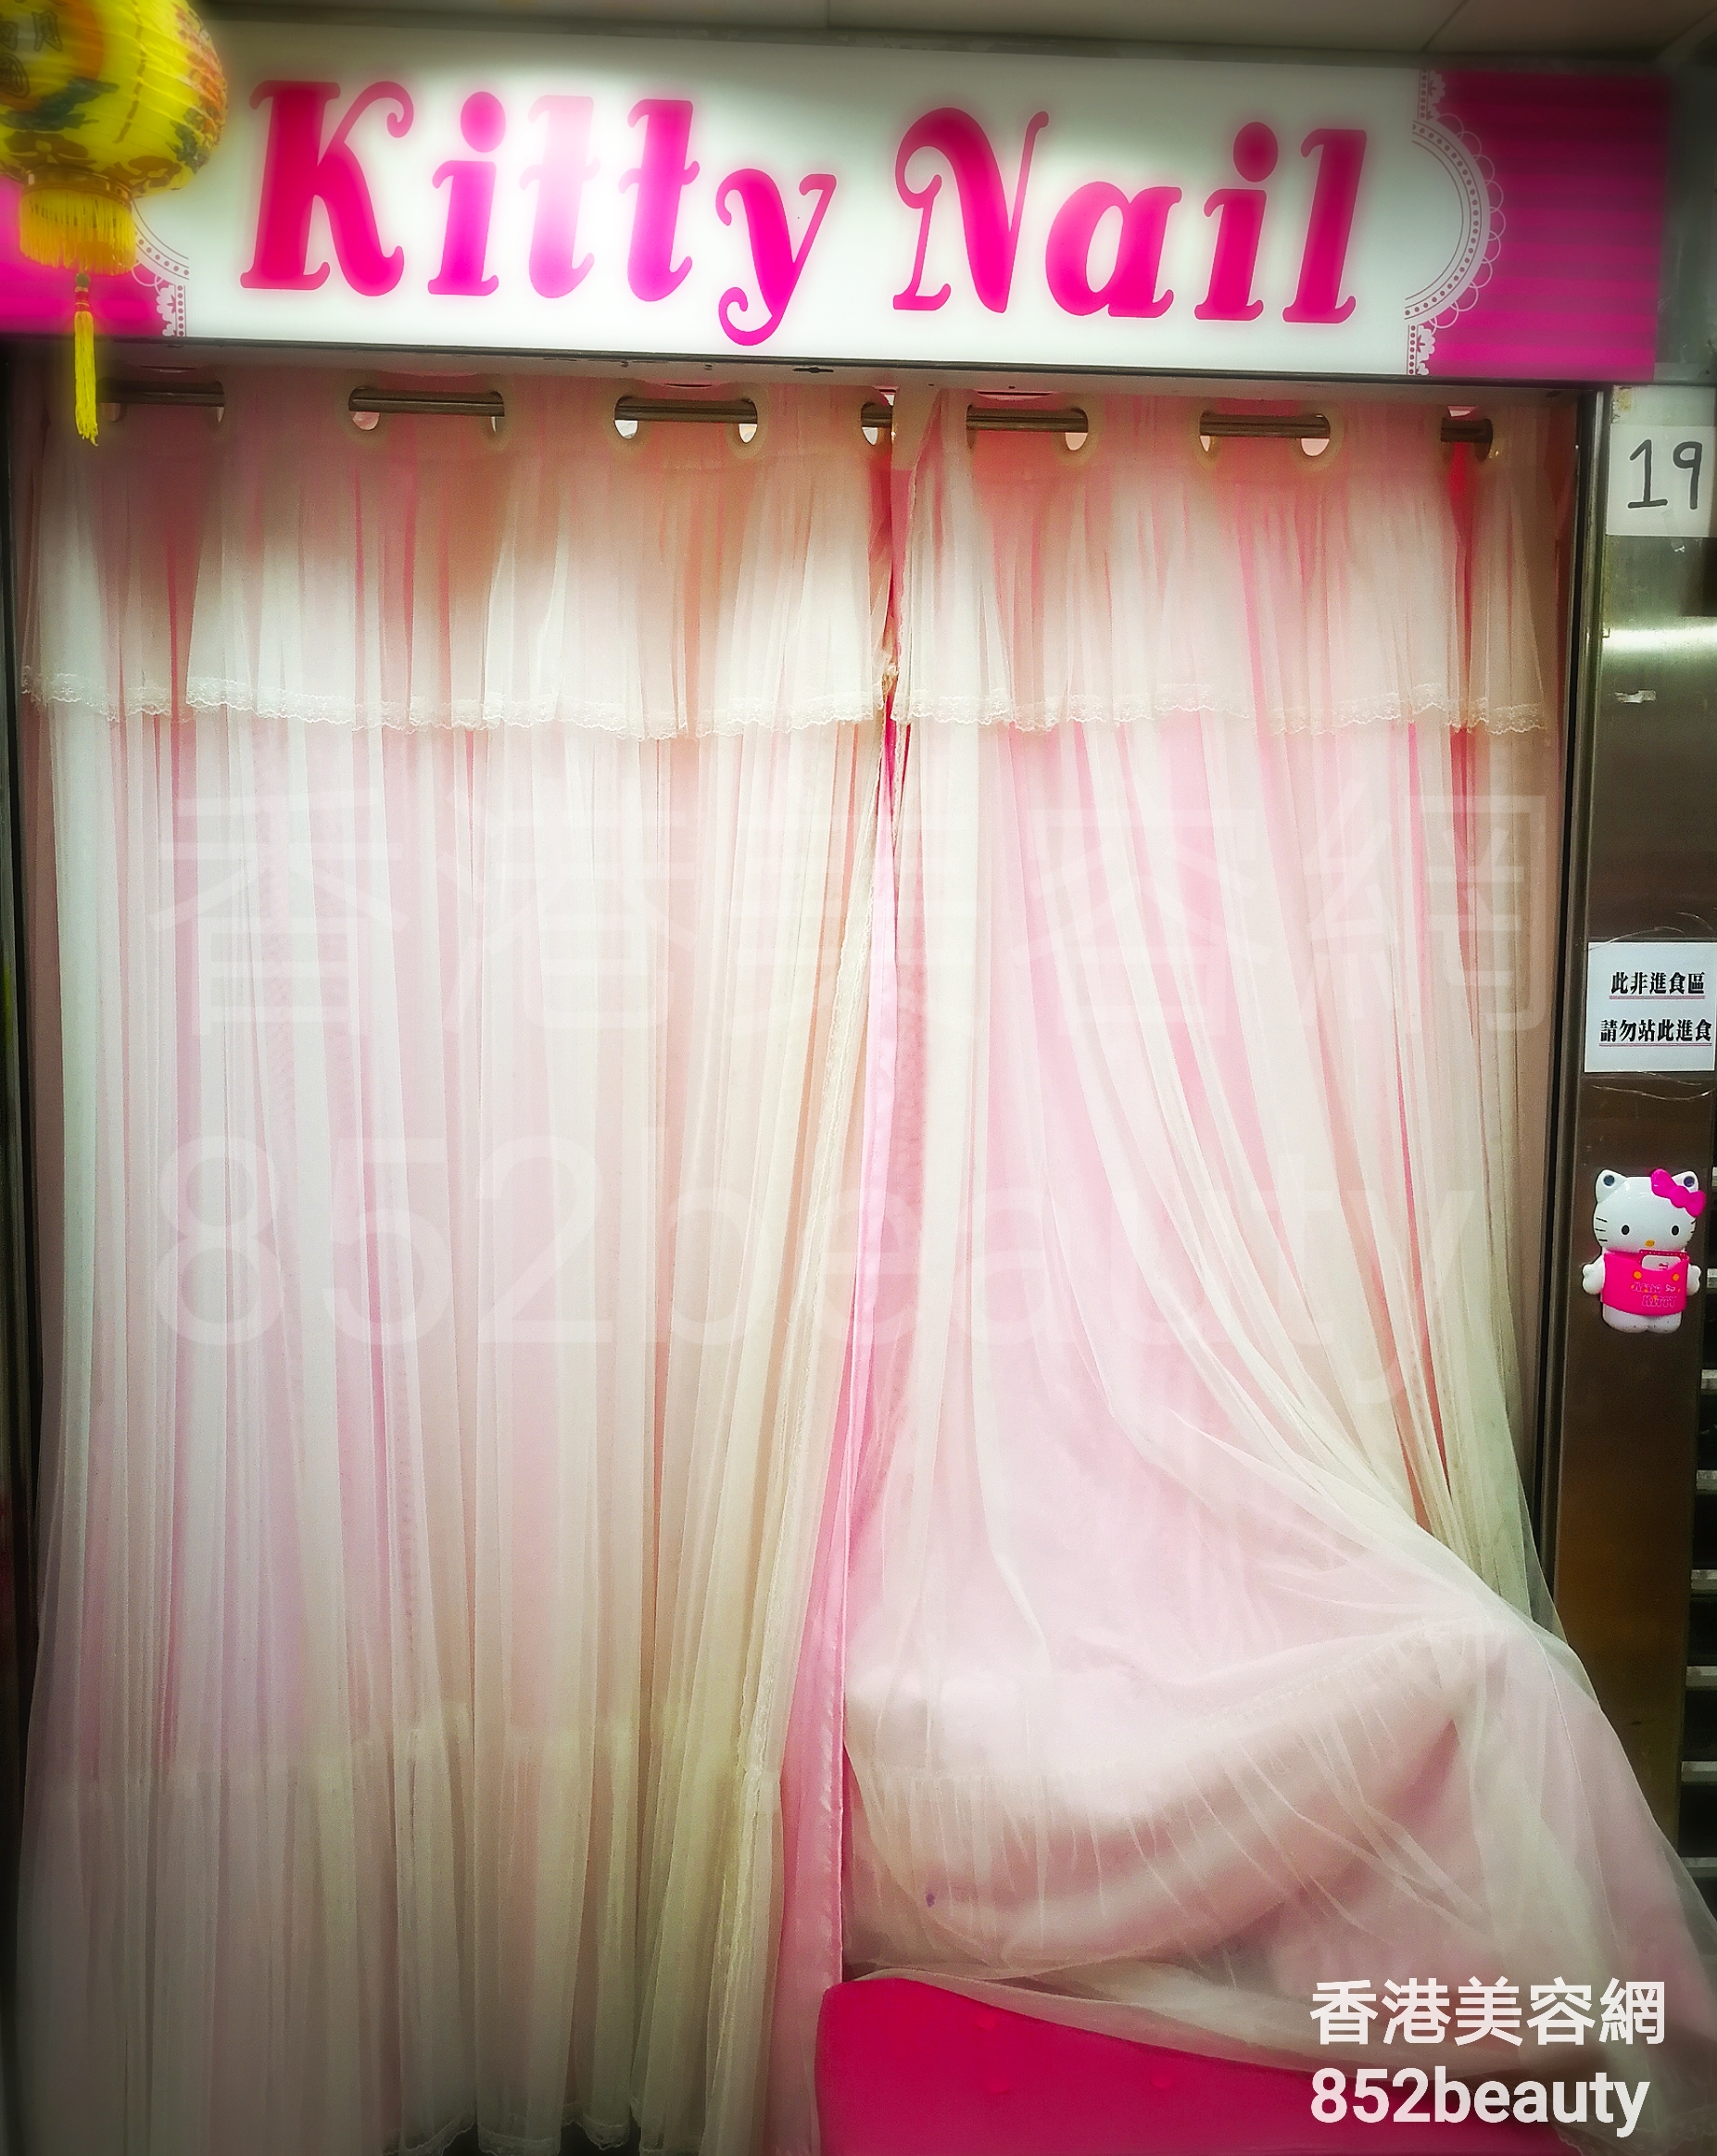 香港美容網 Hong Kong Beauty Salon 美容院 / 美容師: Kitty Nail